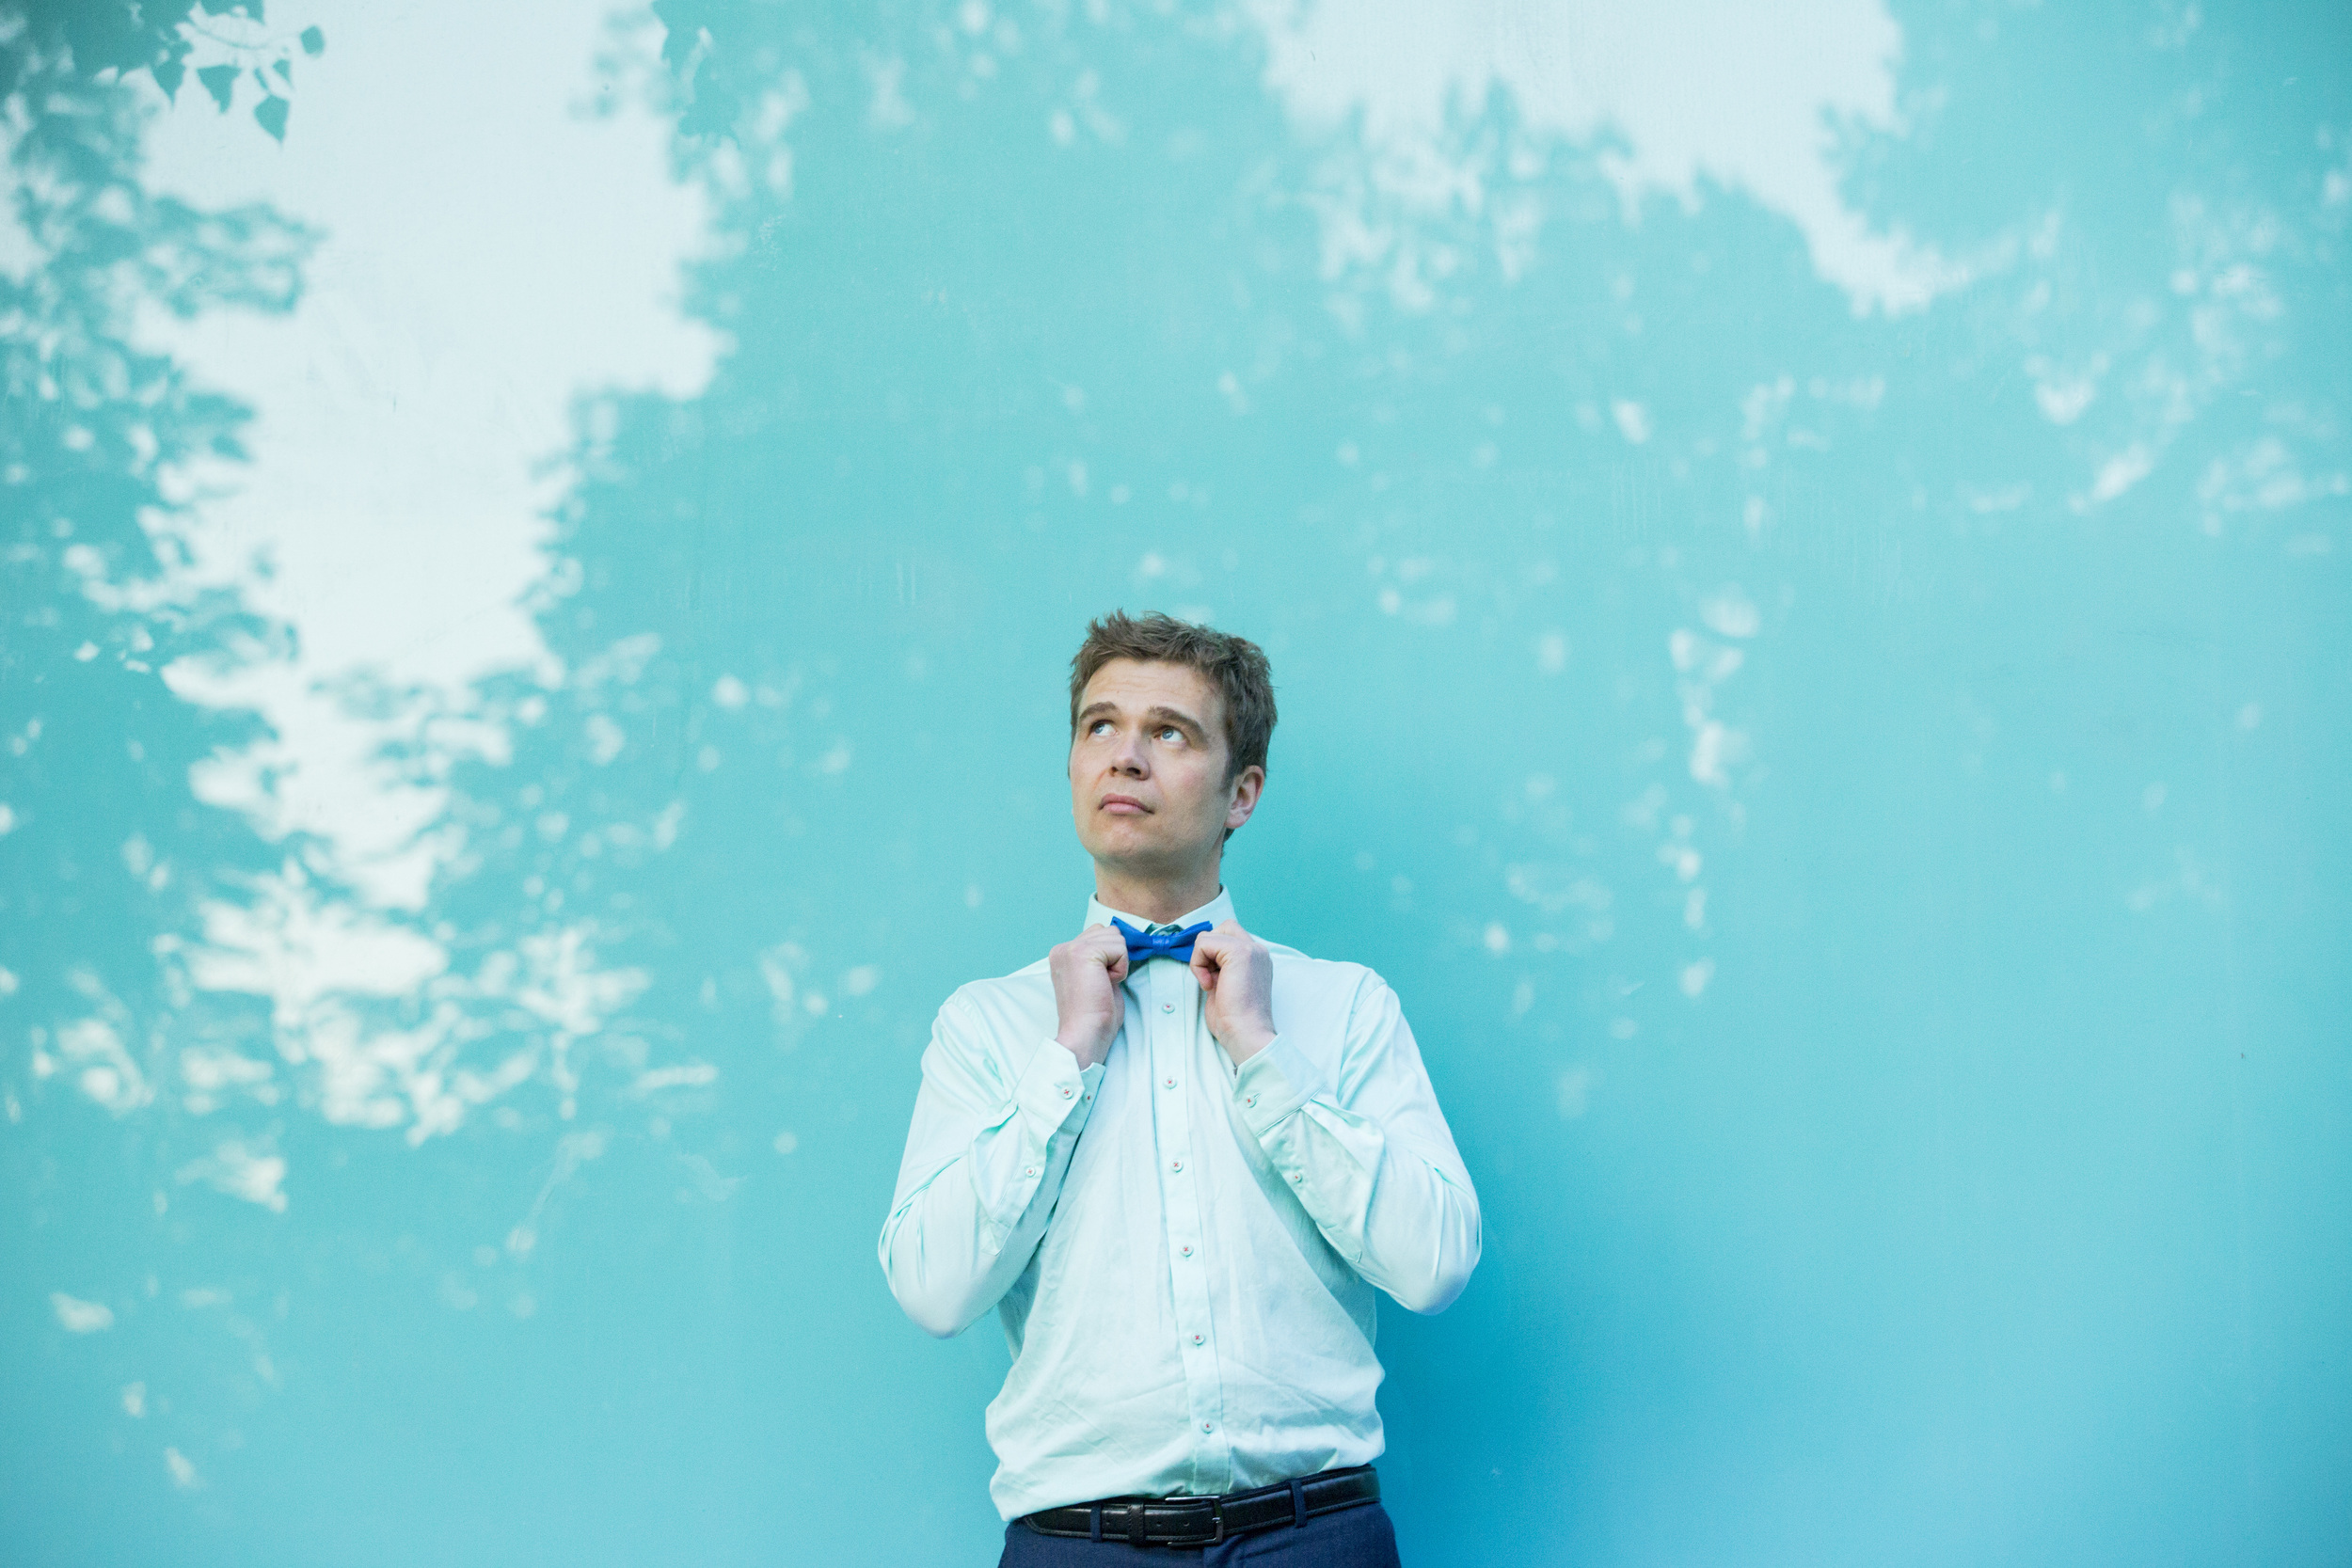 Mann i hvit skjorte, med blått slips lent mot turkis vegg